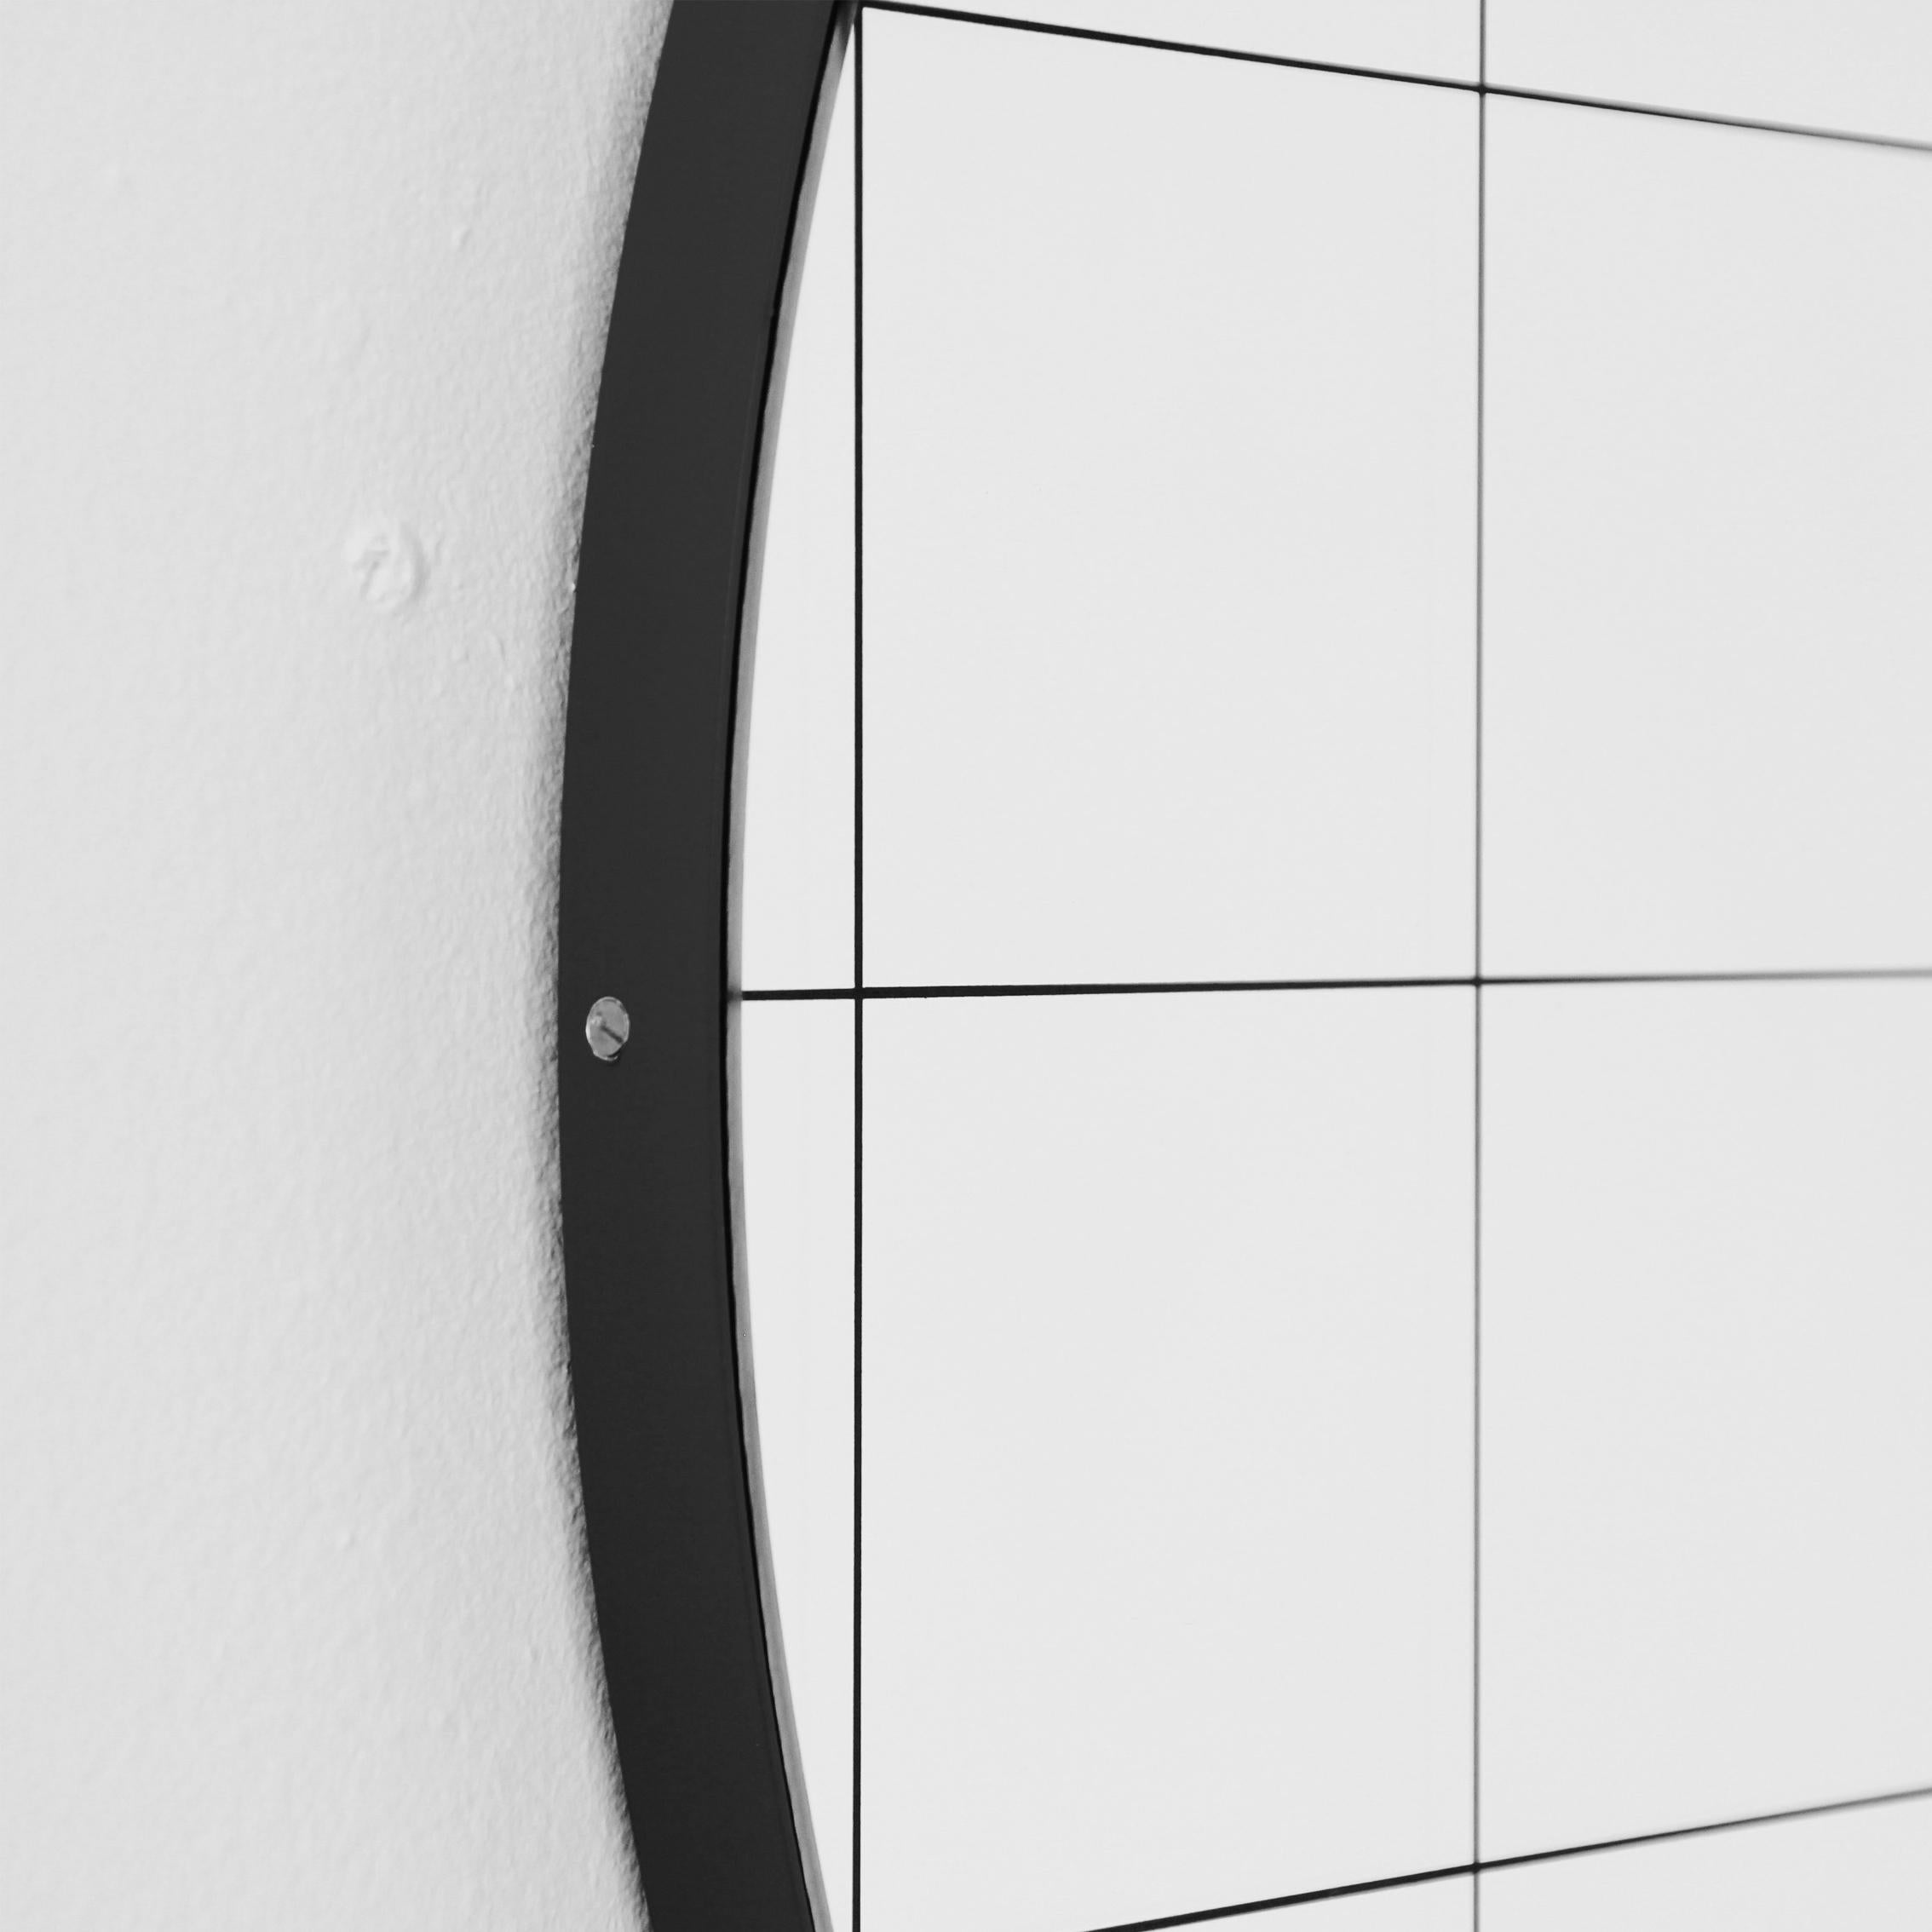 Etched Orbis Black Grid Sandblasted Round Modern Mirror with Black Frame, Medium